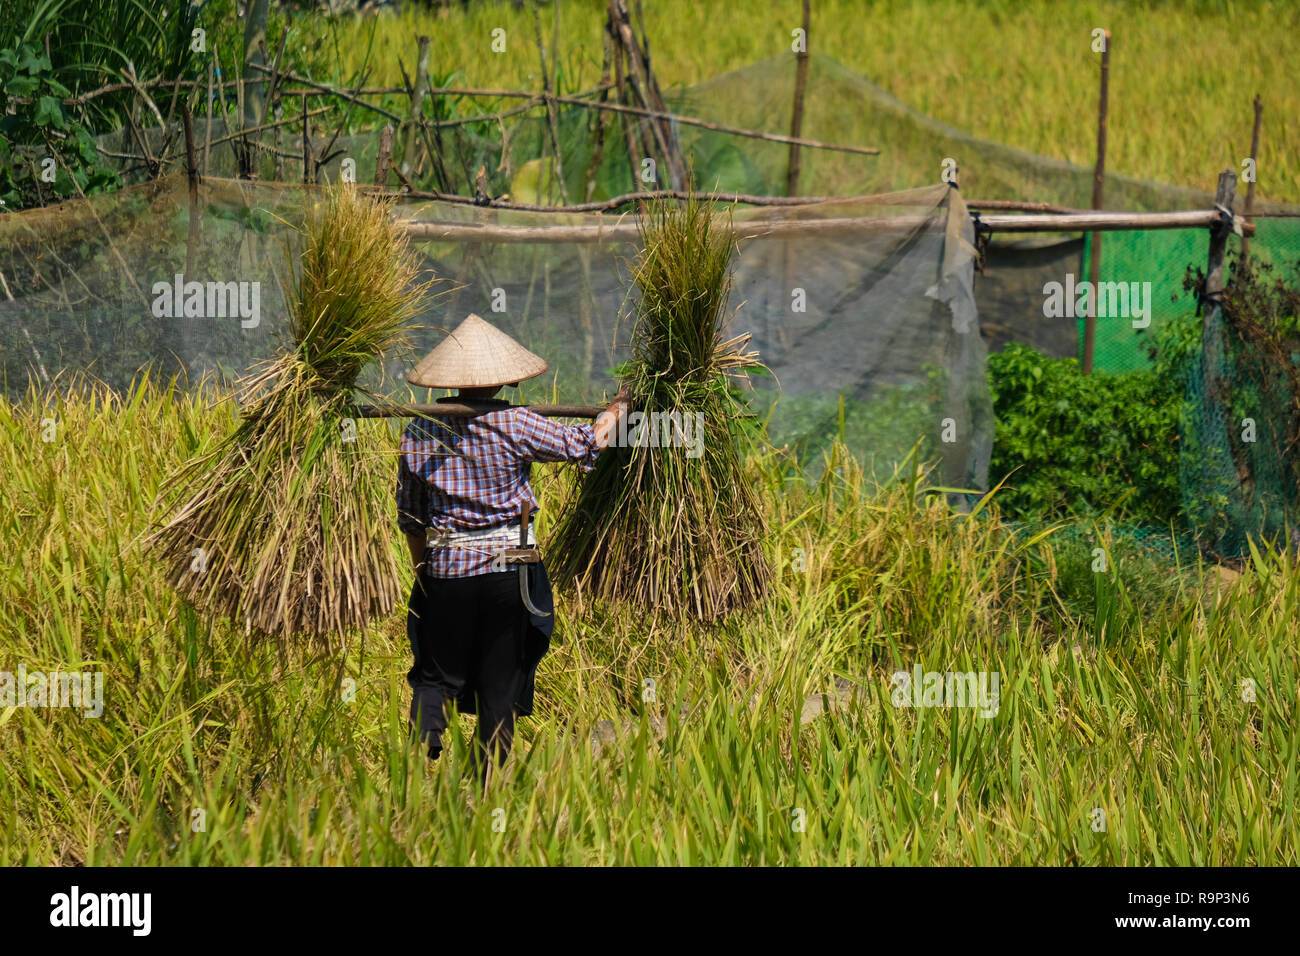 La saison des récoltes. Une agricultrice de la récolte de riz mûrs à la main, la drépanocytose sur champ de riz jaune. Une fermière avec Chapeau conique traditionnel travaillant Banque D'Images